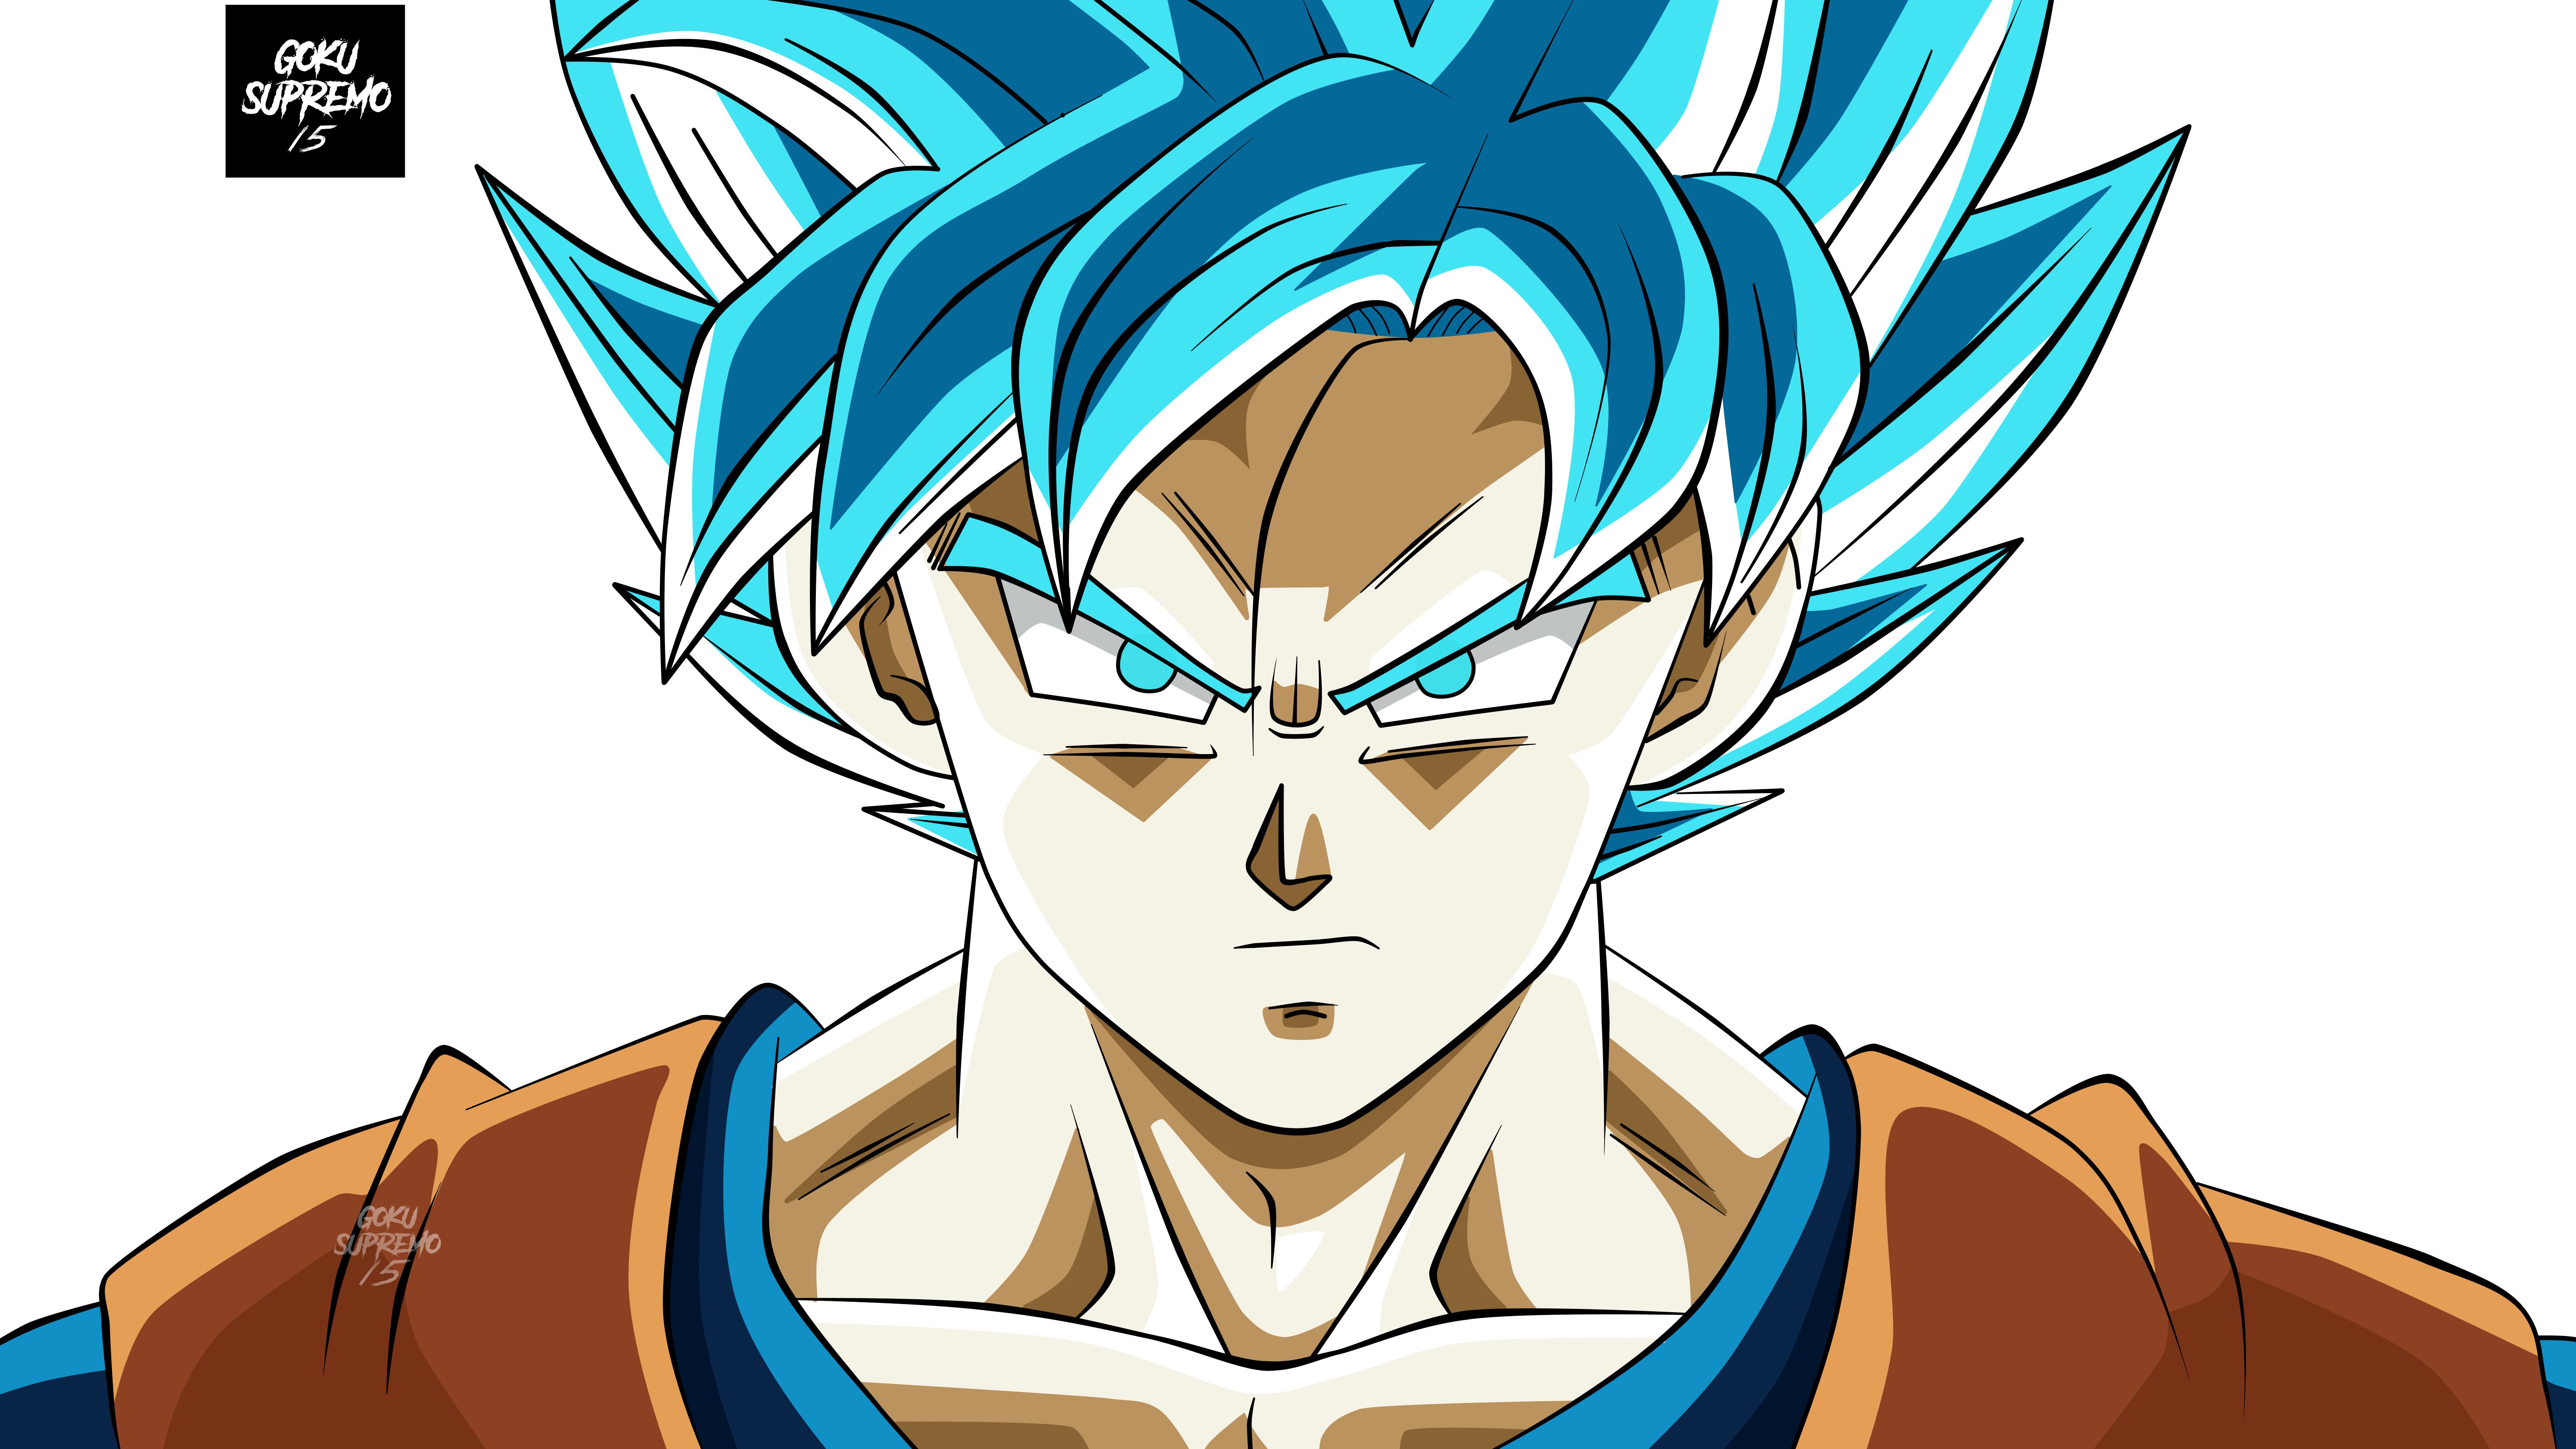 Goku Super Sayayin Blue - torneo del poder by GokuSupremo15 on DeviantArt